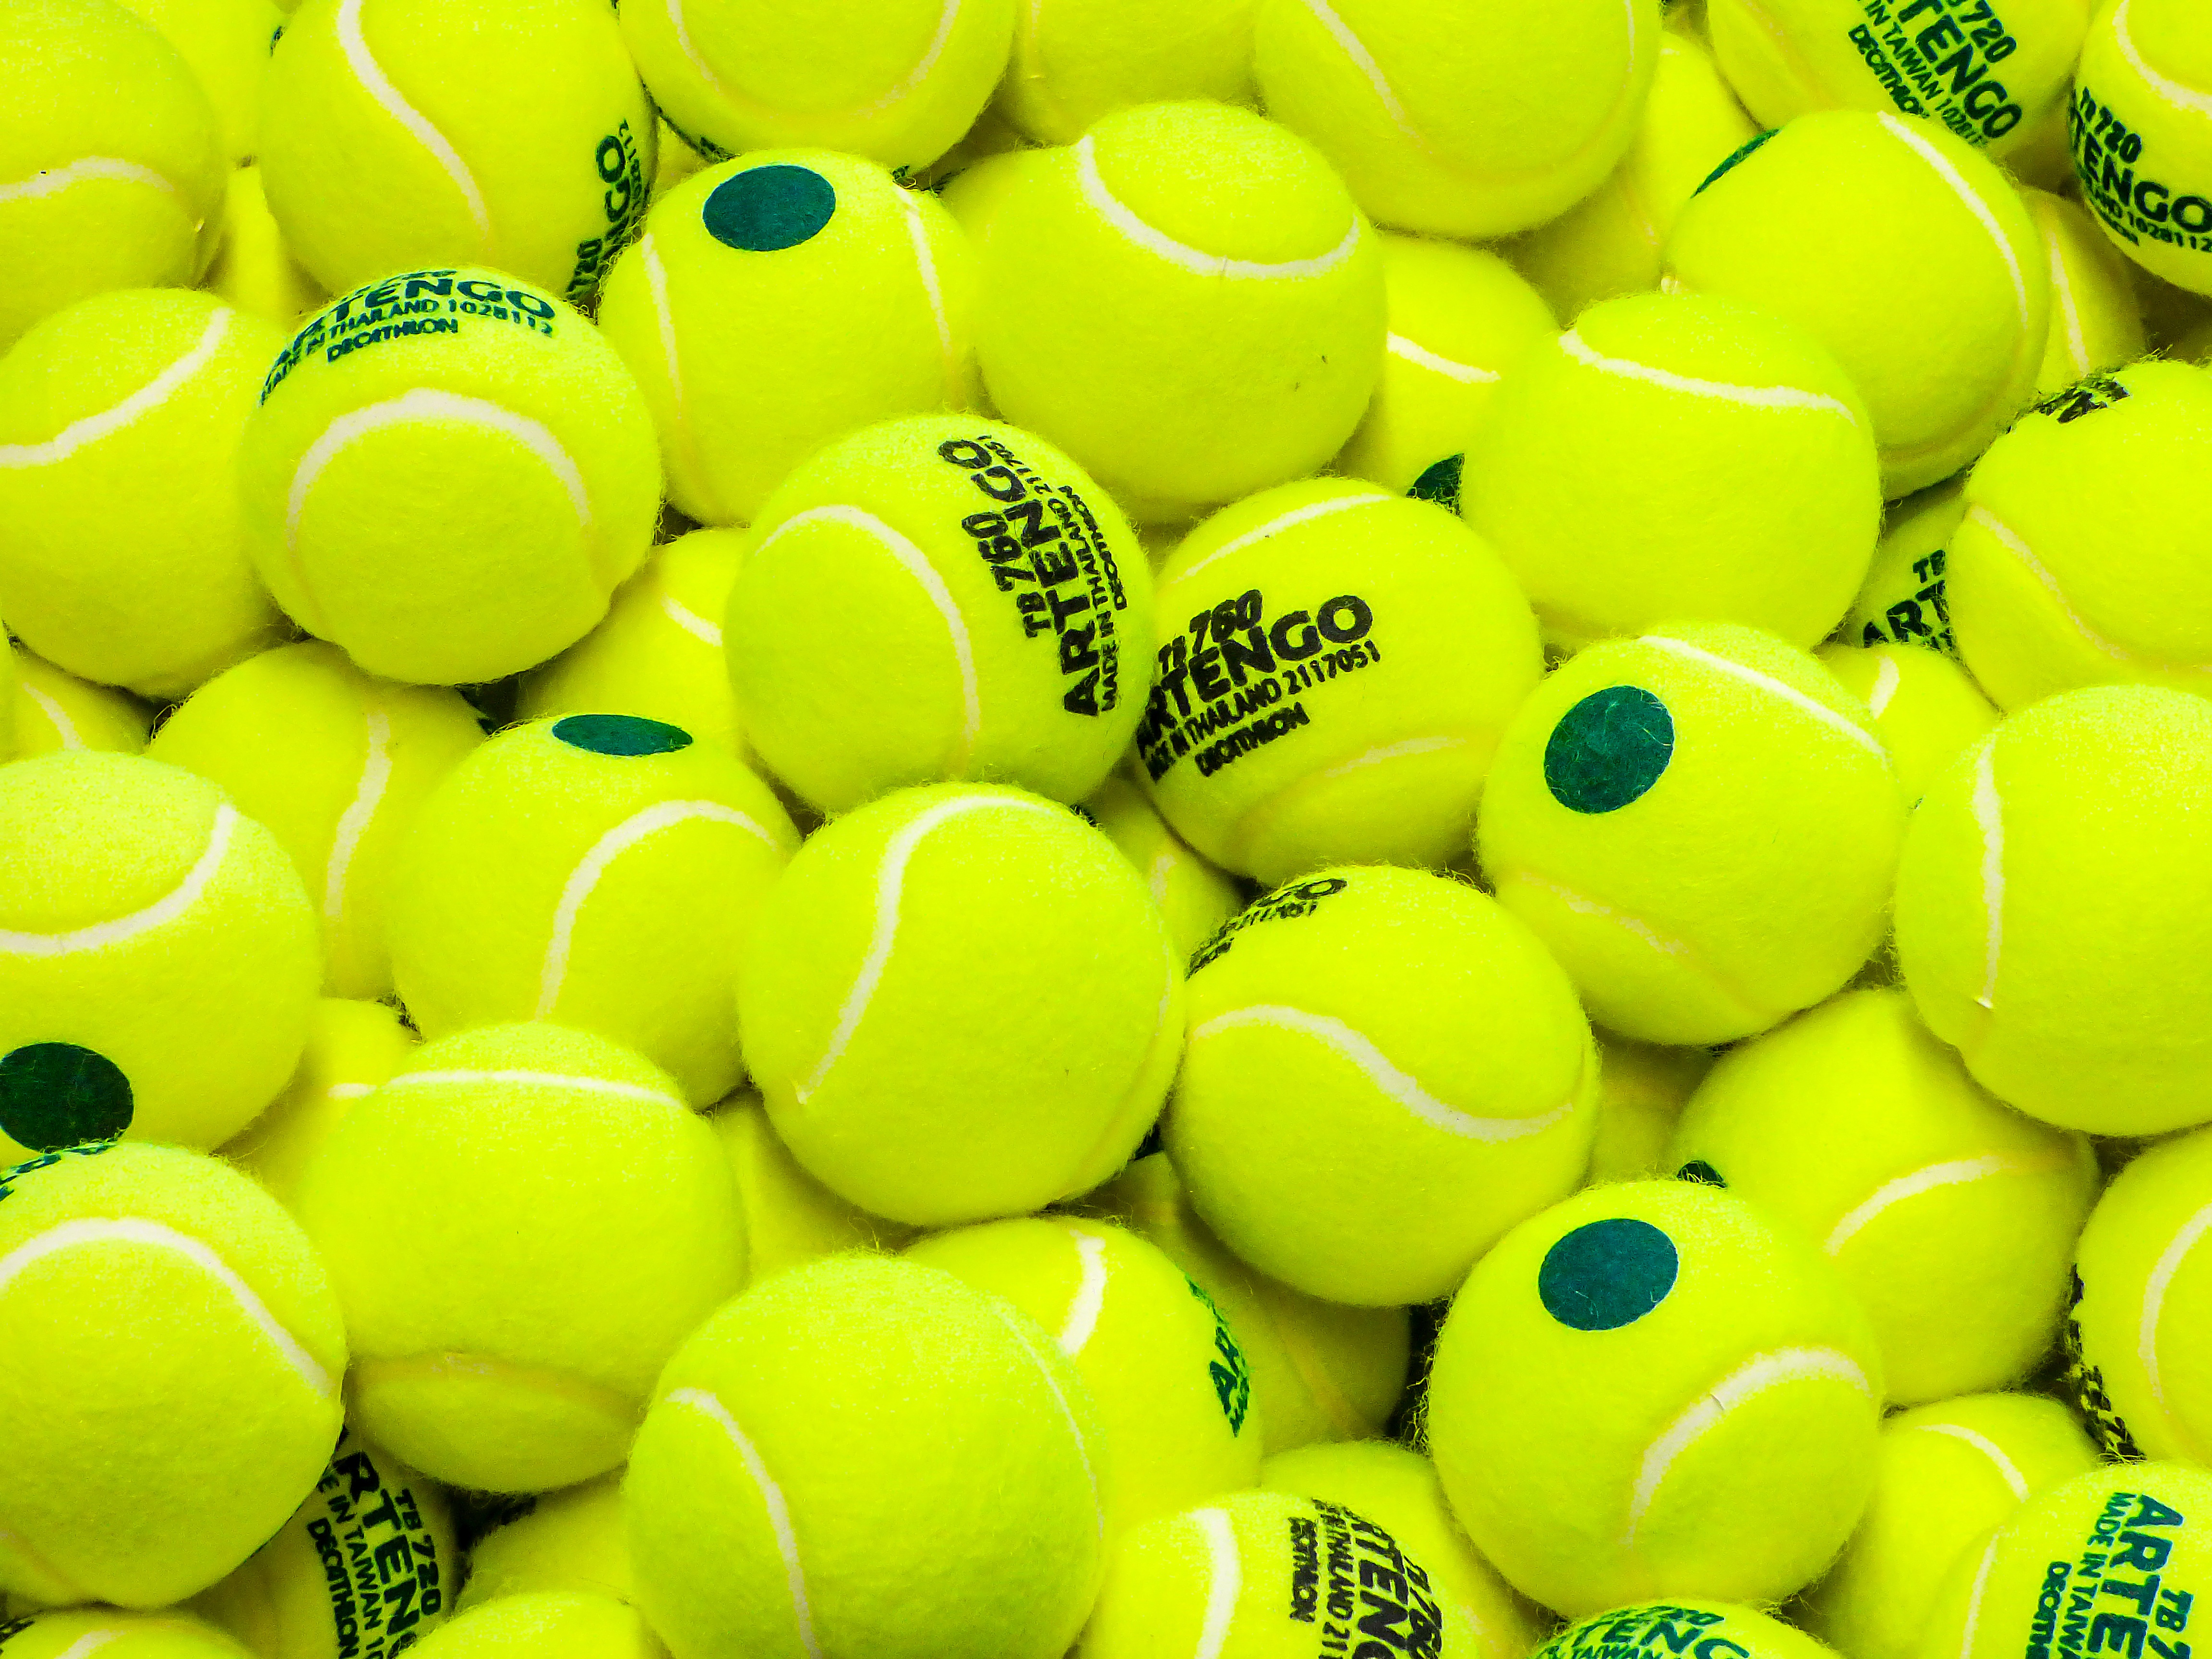 144392 descargar imagen tenis, deportes, amarillo, pelotas, bolas, verde claro, ensalada: fondos de pantalla y protectores de pantalla gratis